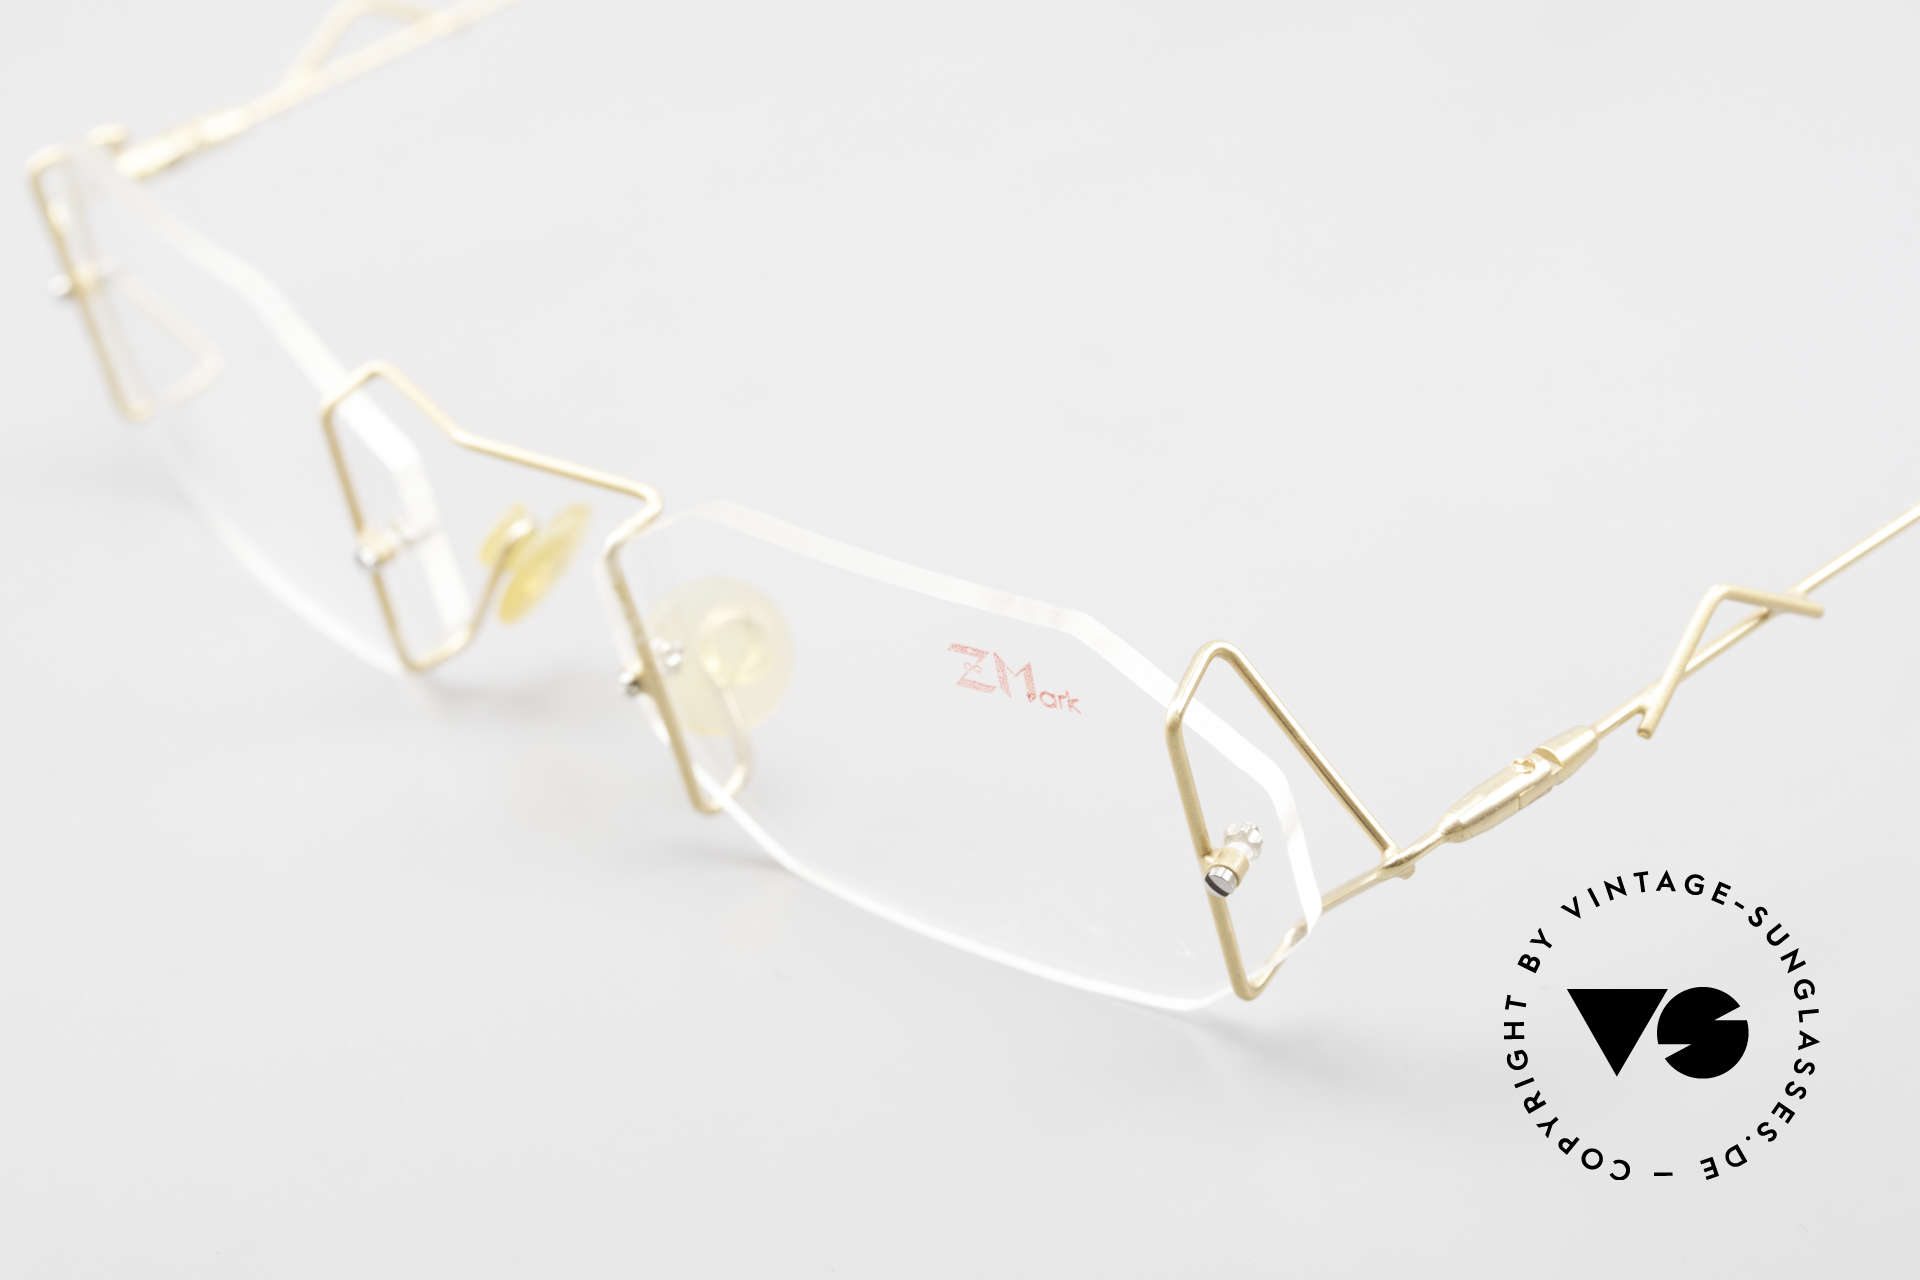 Z Mark 9 Kunstvolle Bohrbrille 90er, ungetragenes Meisterstück mit orig. DEMO-Gläsern, Passend für Herren und Damen